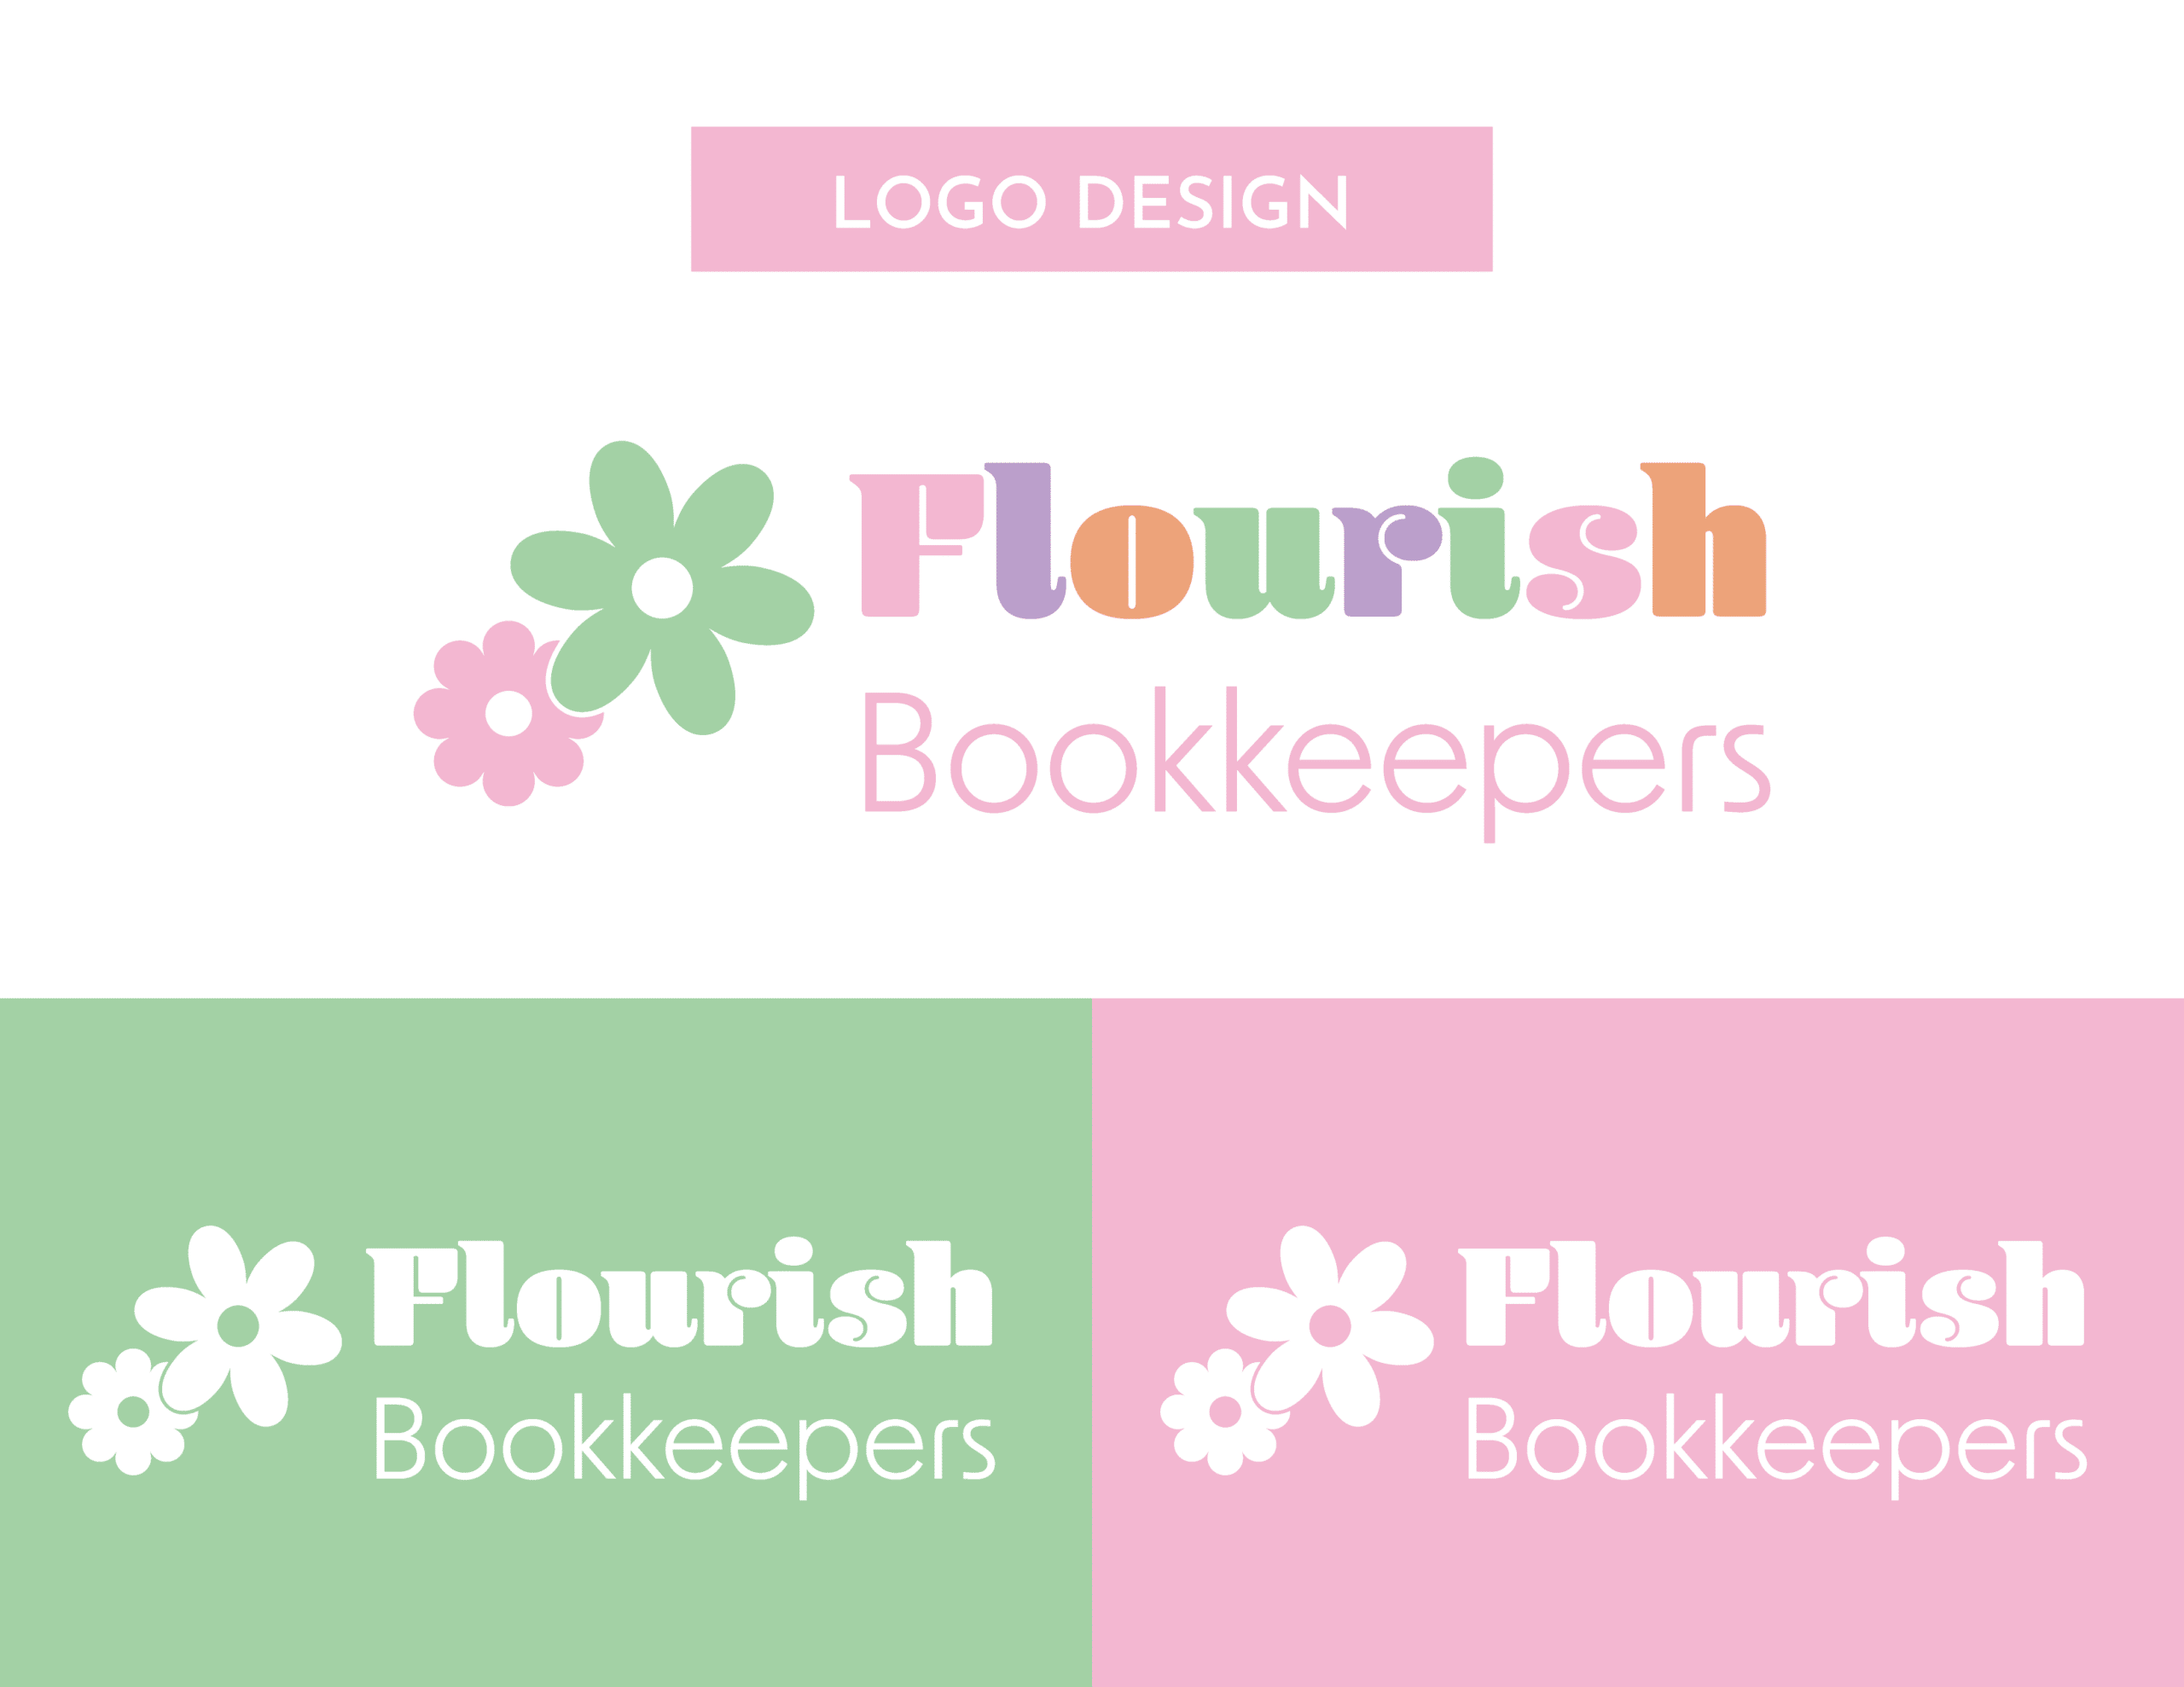 01FlourishBK_Showcase_Logo Design